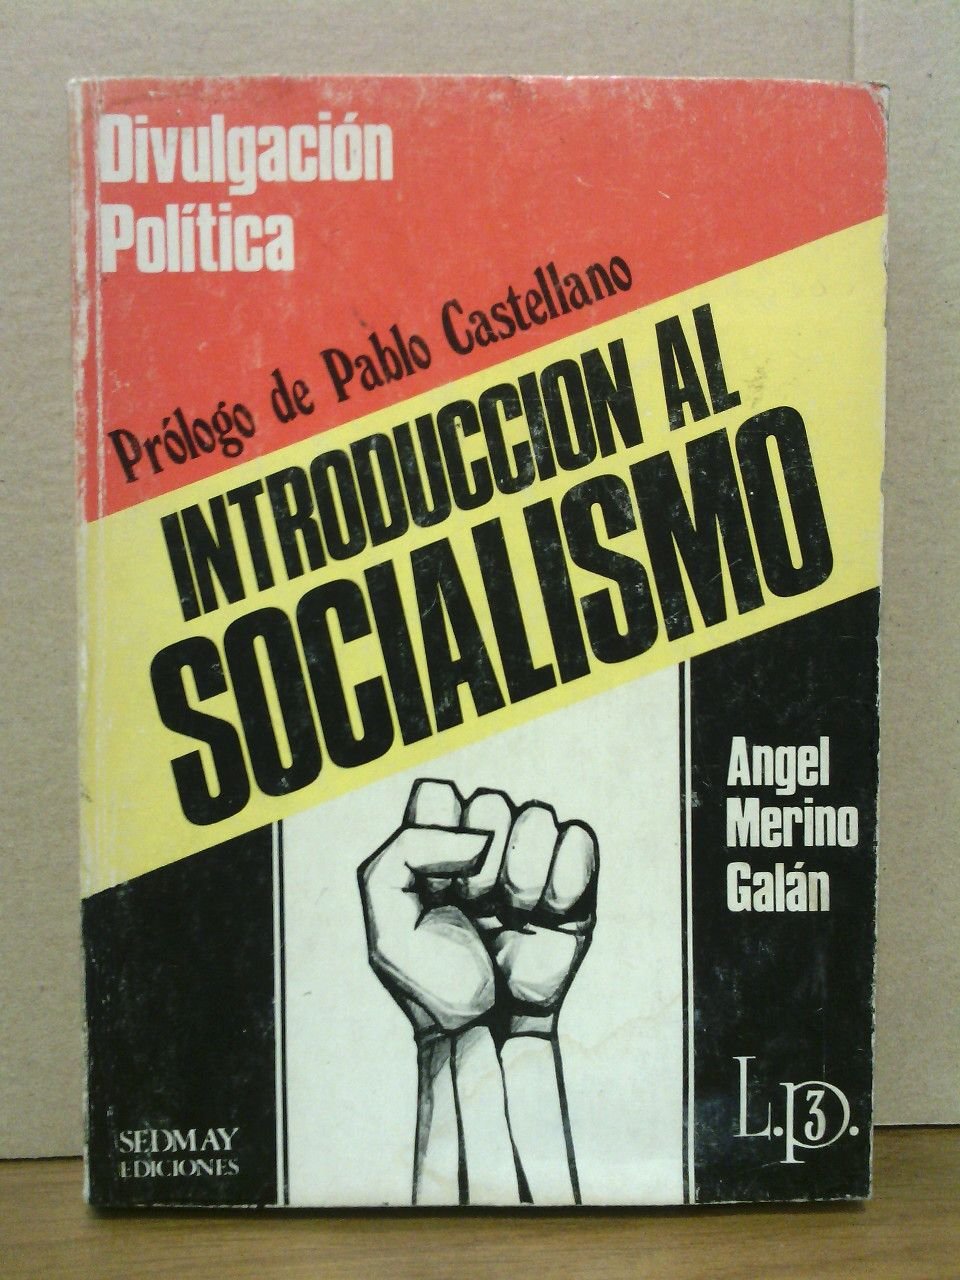 Divulgación política: INTRODUCCION AL SOCIALISMO / Prol. de Pablo Castellano